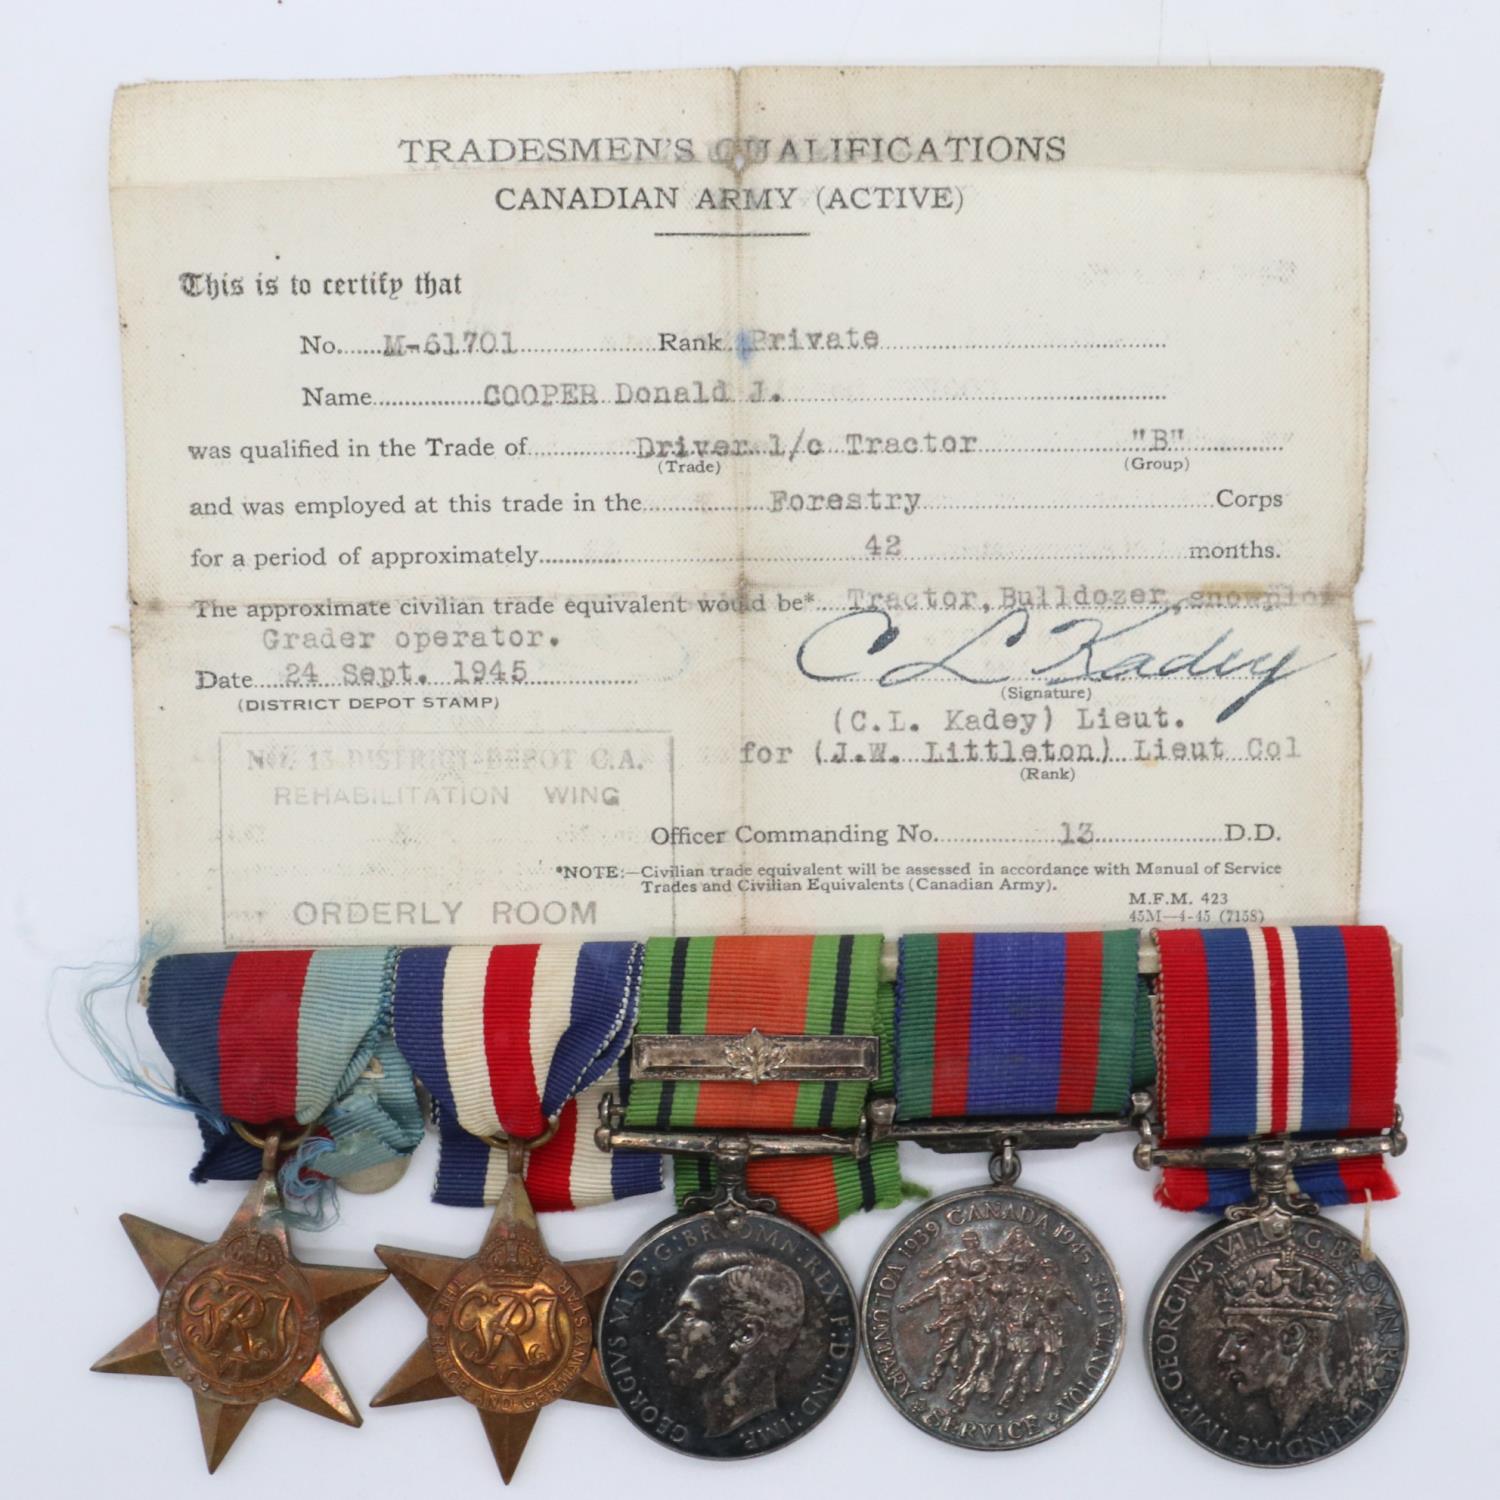 Canadian WWII medal group to M-61701 Pte D J Cooper, comprising BWM, Defence medal, Volunteer